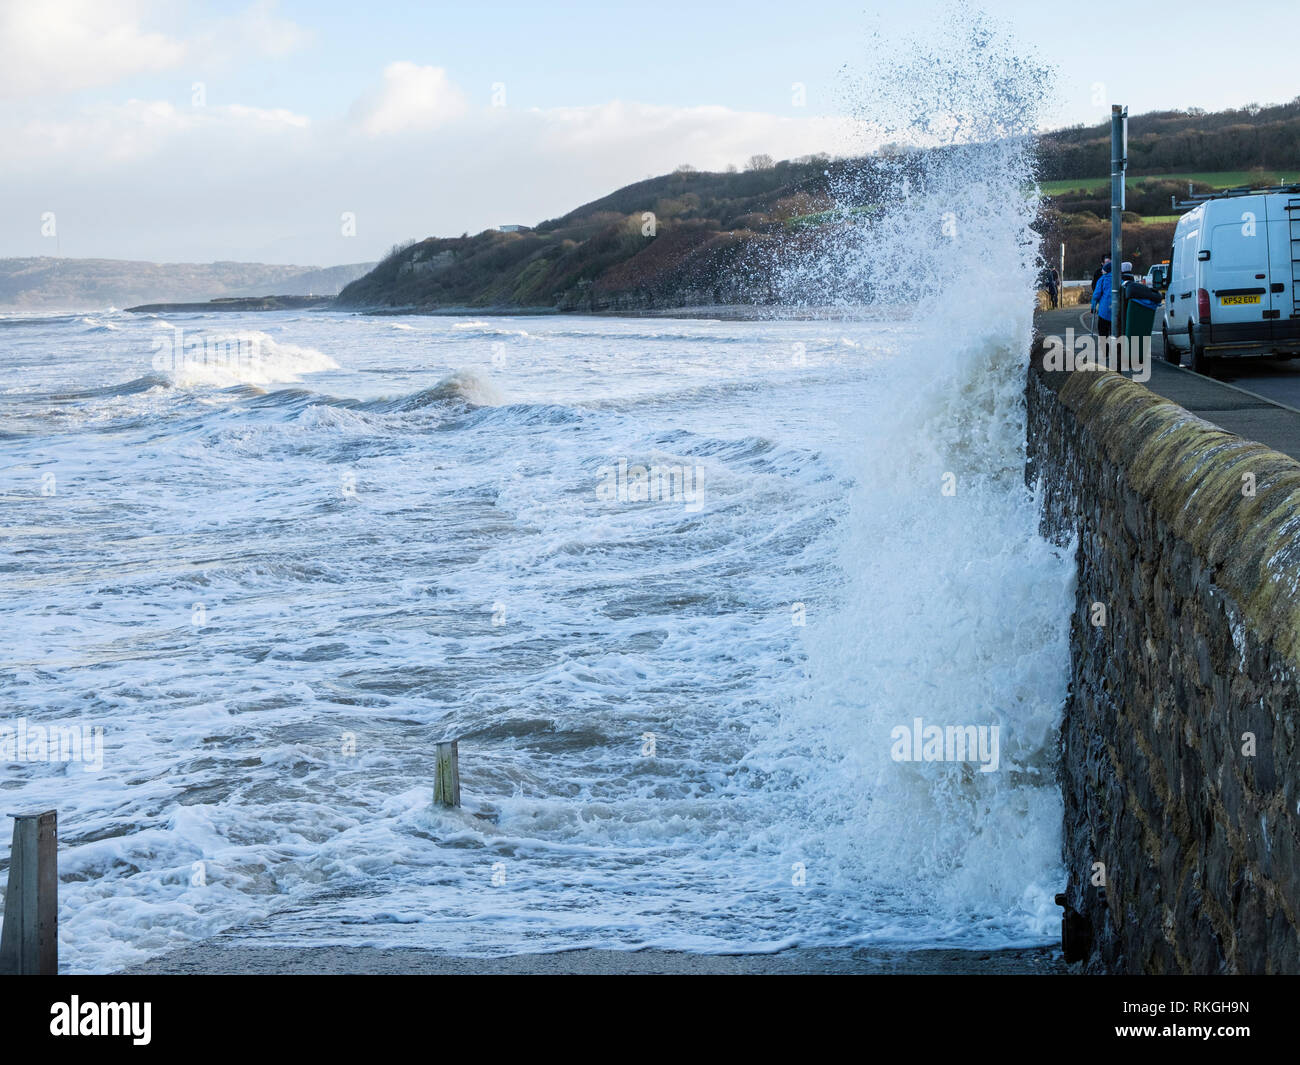 L'état de la mer et les vagues se briser contre le mur sur la mer pendant un coup de vent en bord de mer à marée haute. Benllech, Ile d'Anglesey, au Pays de Galles, Royaume-Uni, Angleterre Banque D'Images